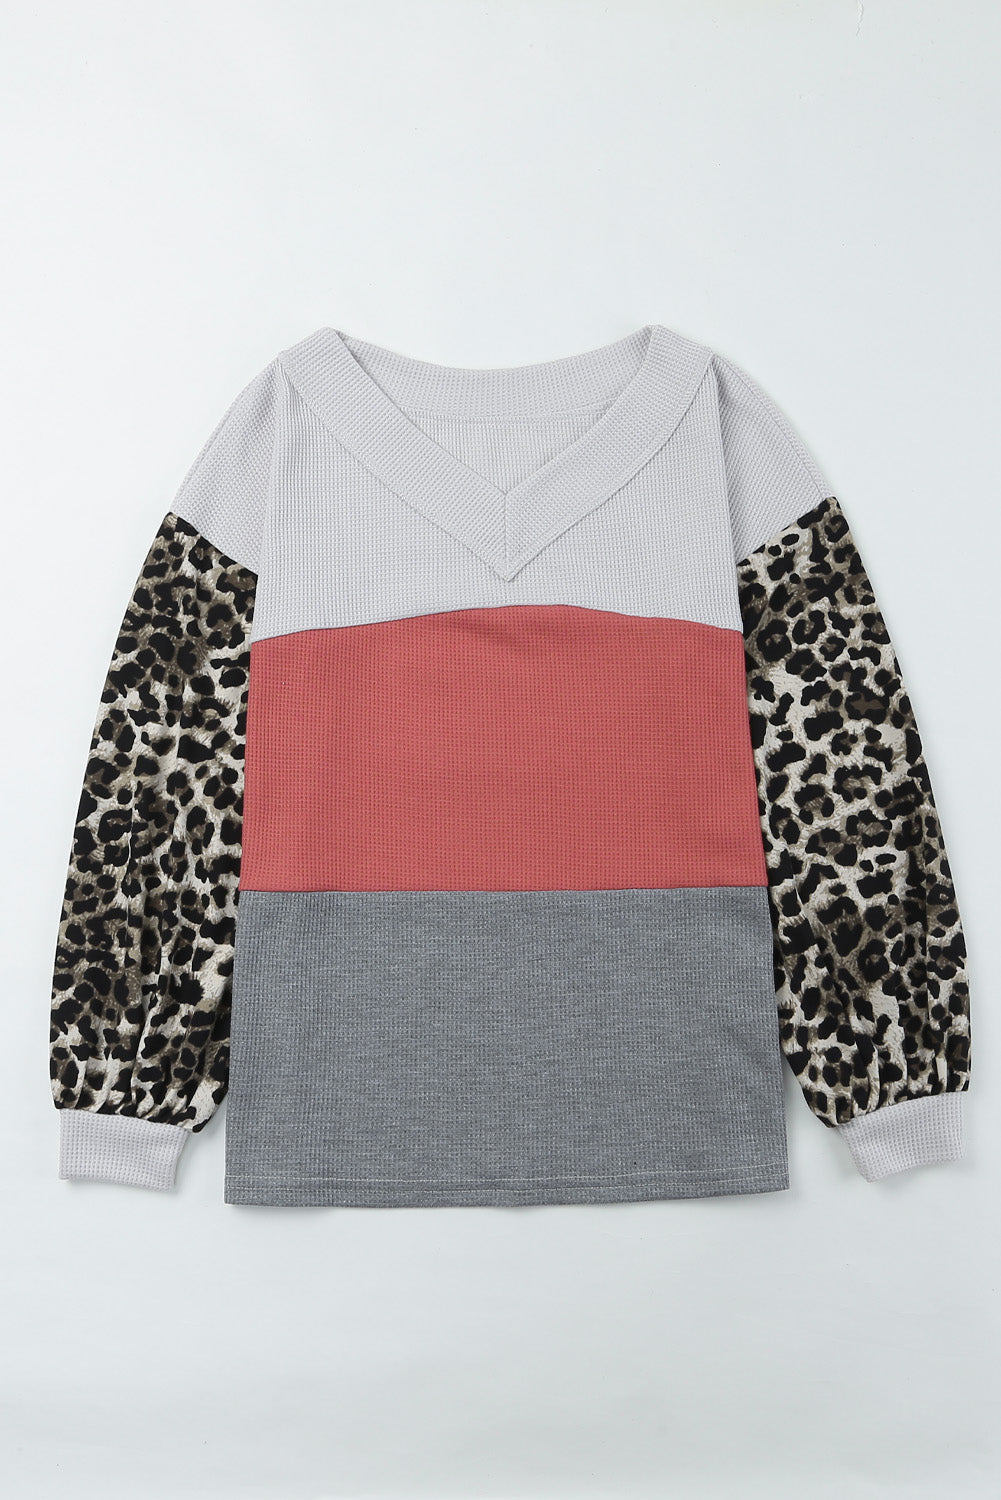 Haut en tricot gaufré color block à manches contrastées léopard sauvage rouge vif